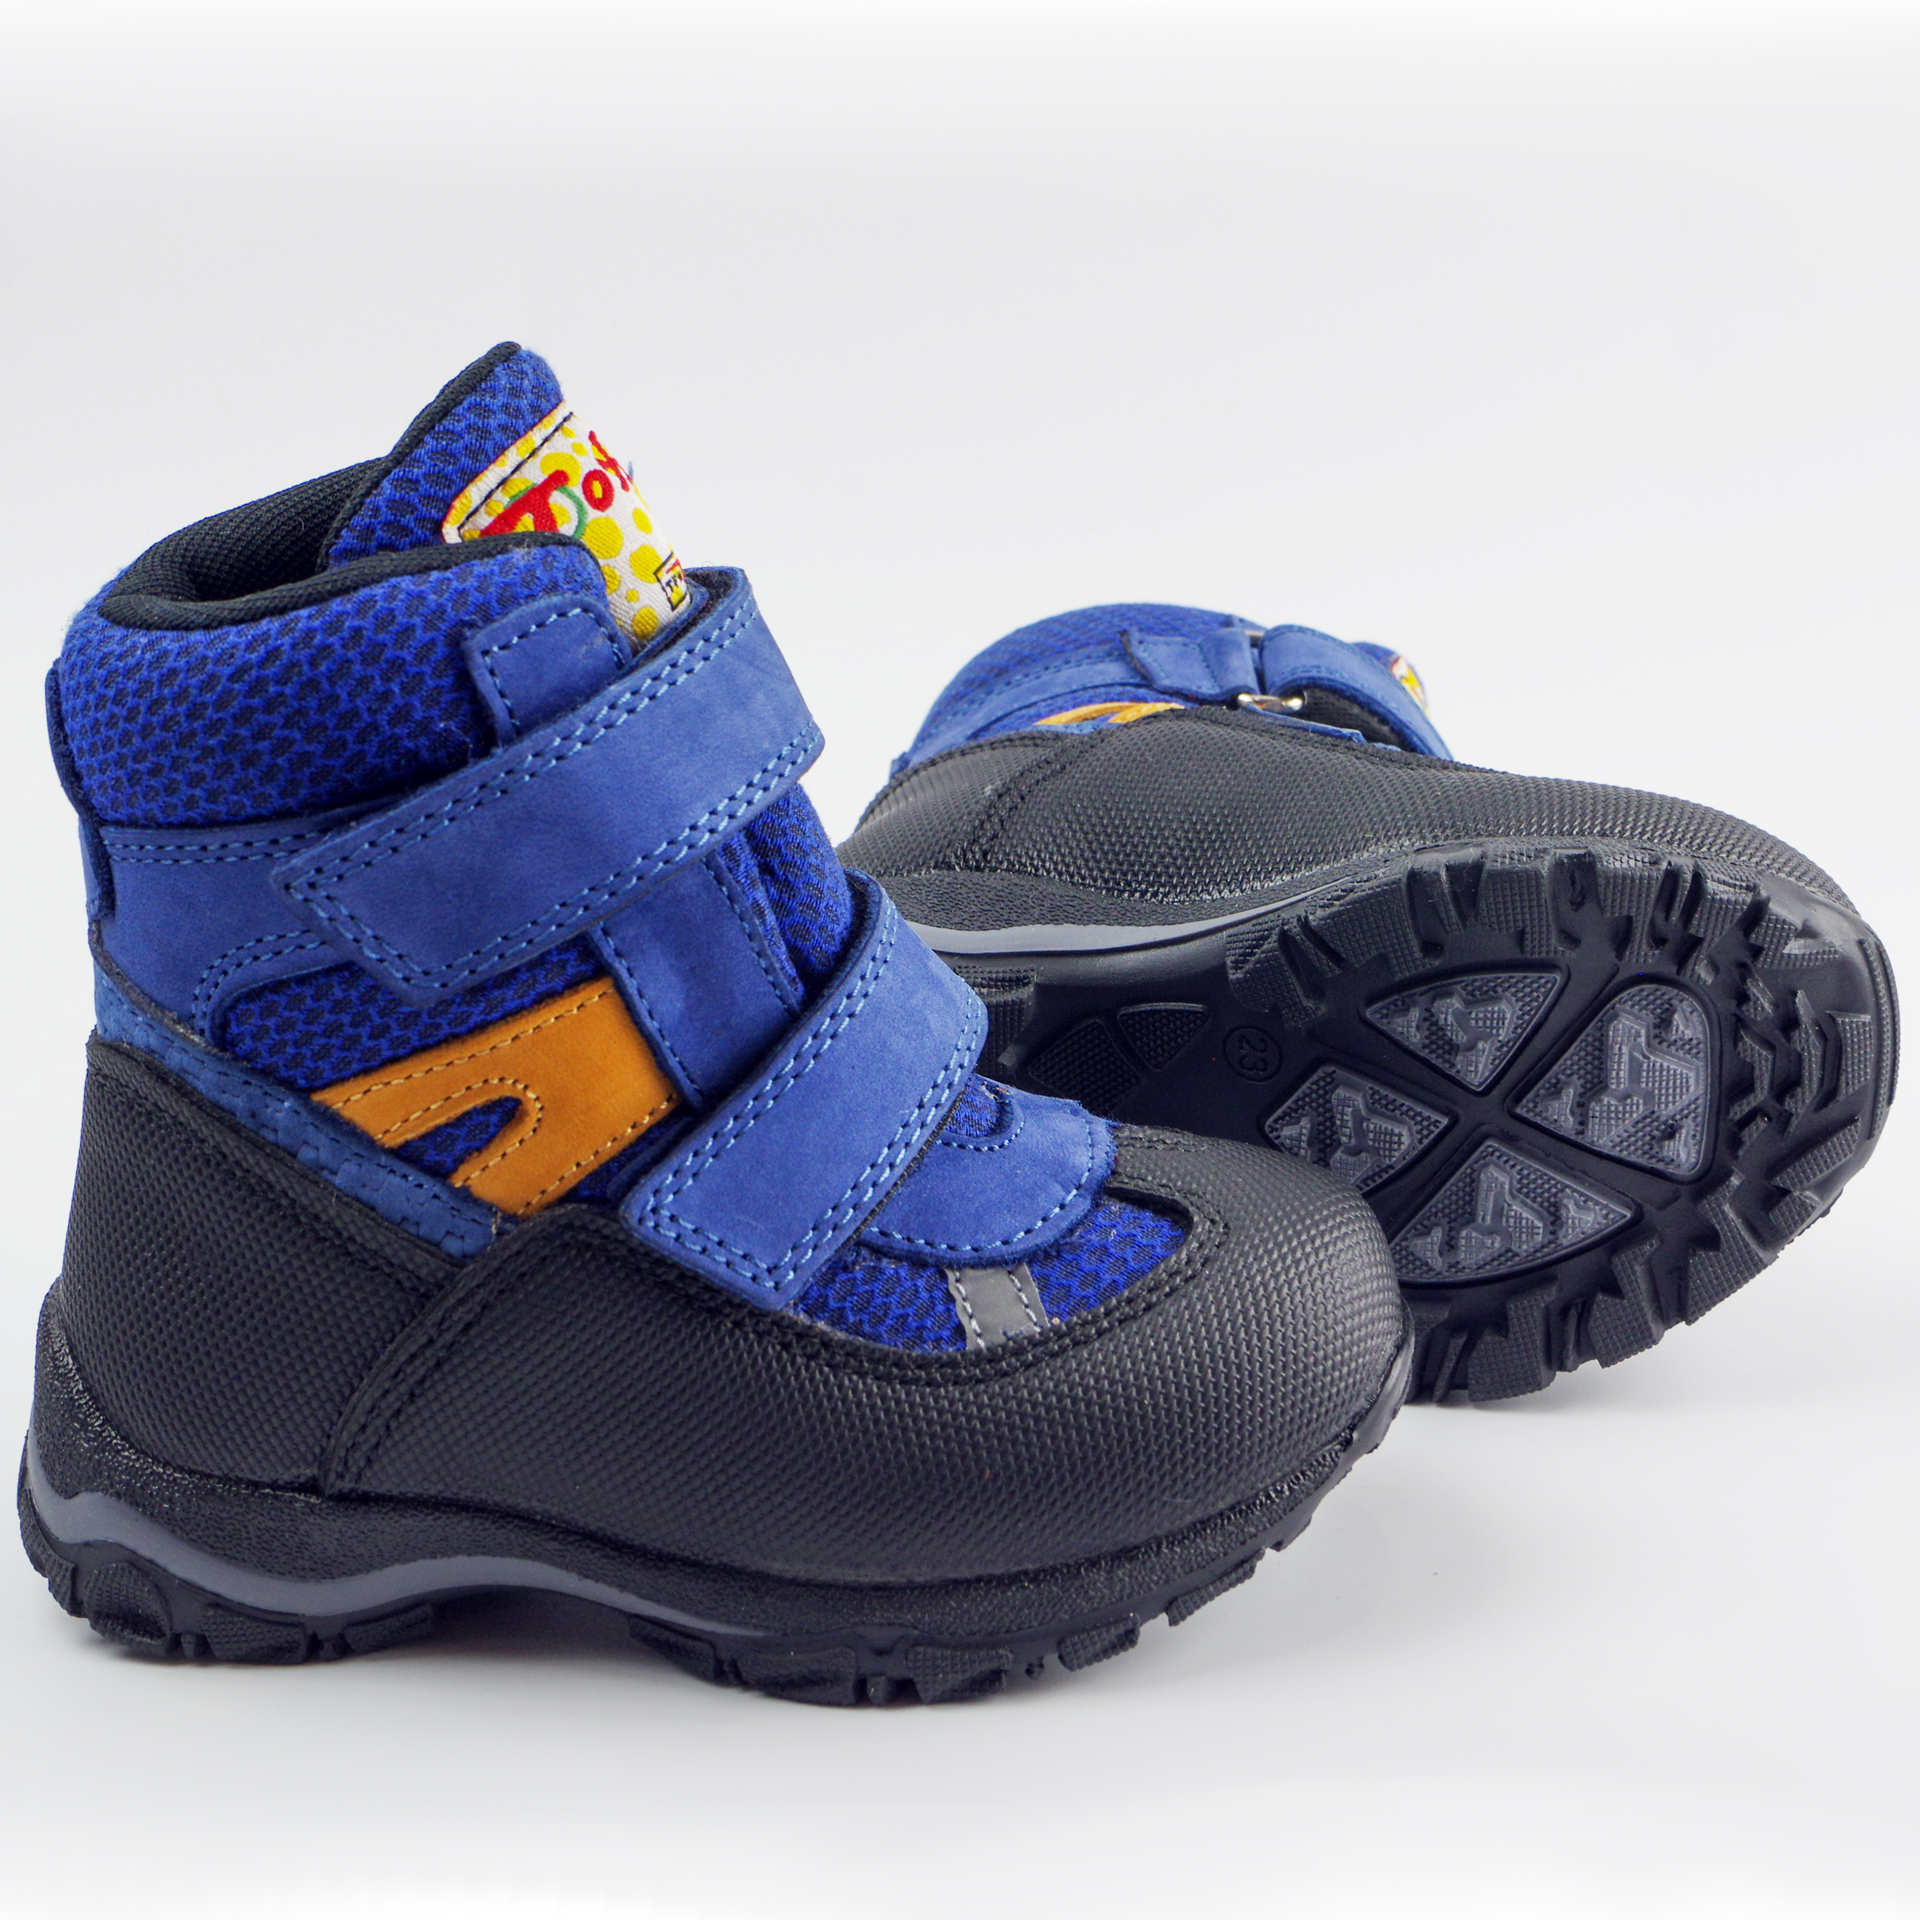 Зимние мембранные ботинки (2146) материал Мембрана, цвет Синий  для мальчиков 22-25 размеры – Sole Kids. Фото 3